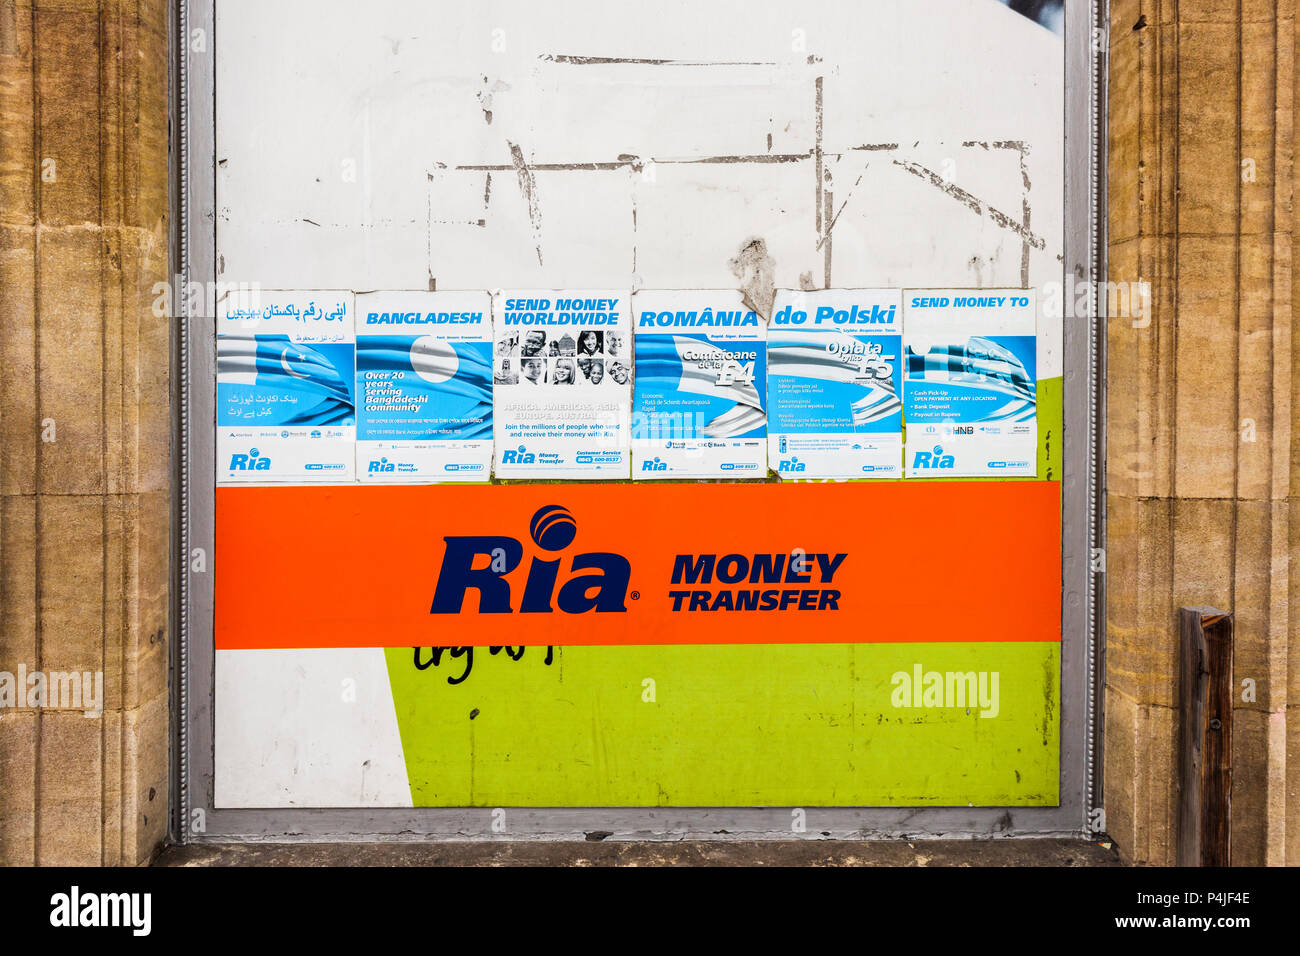 Signes multilingue Ria de publicité des services de transfert d'argent à l'étranger sur l'affichage à Woking, une ville multiculturelle à Surrey, Angleterre du Sud-Est, Royaume-Uni Banque D'Images